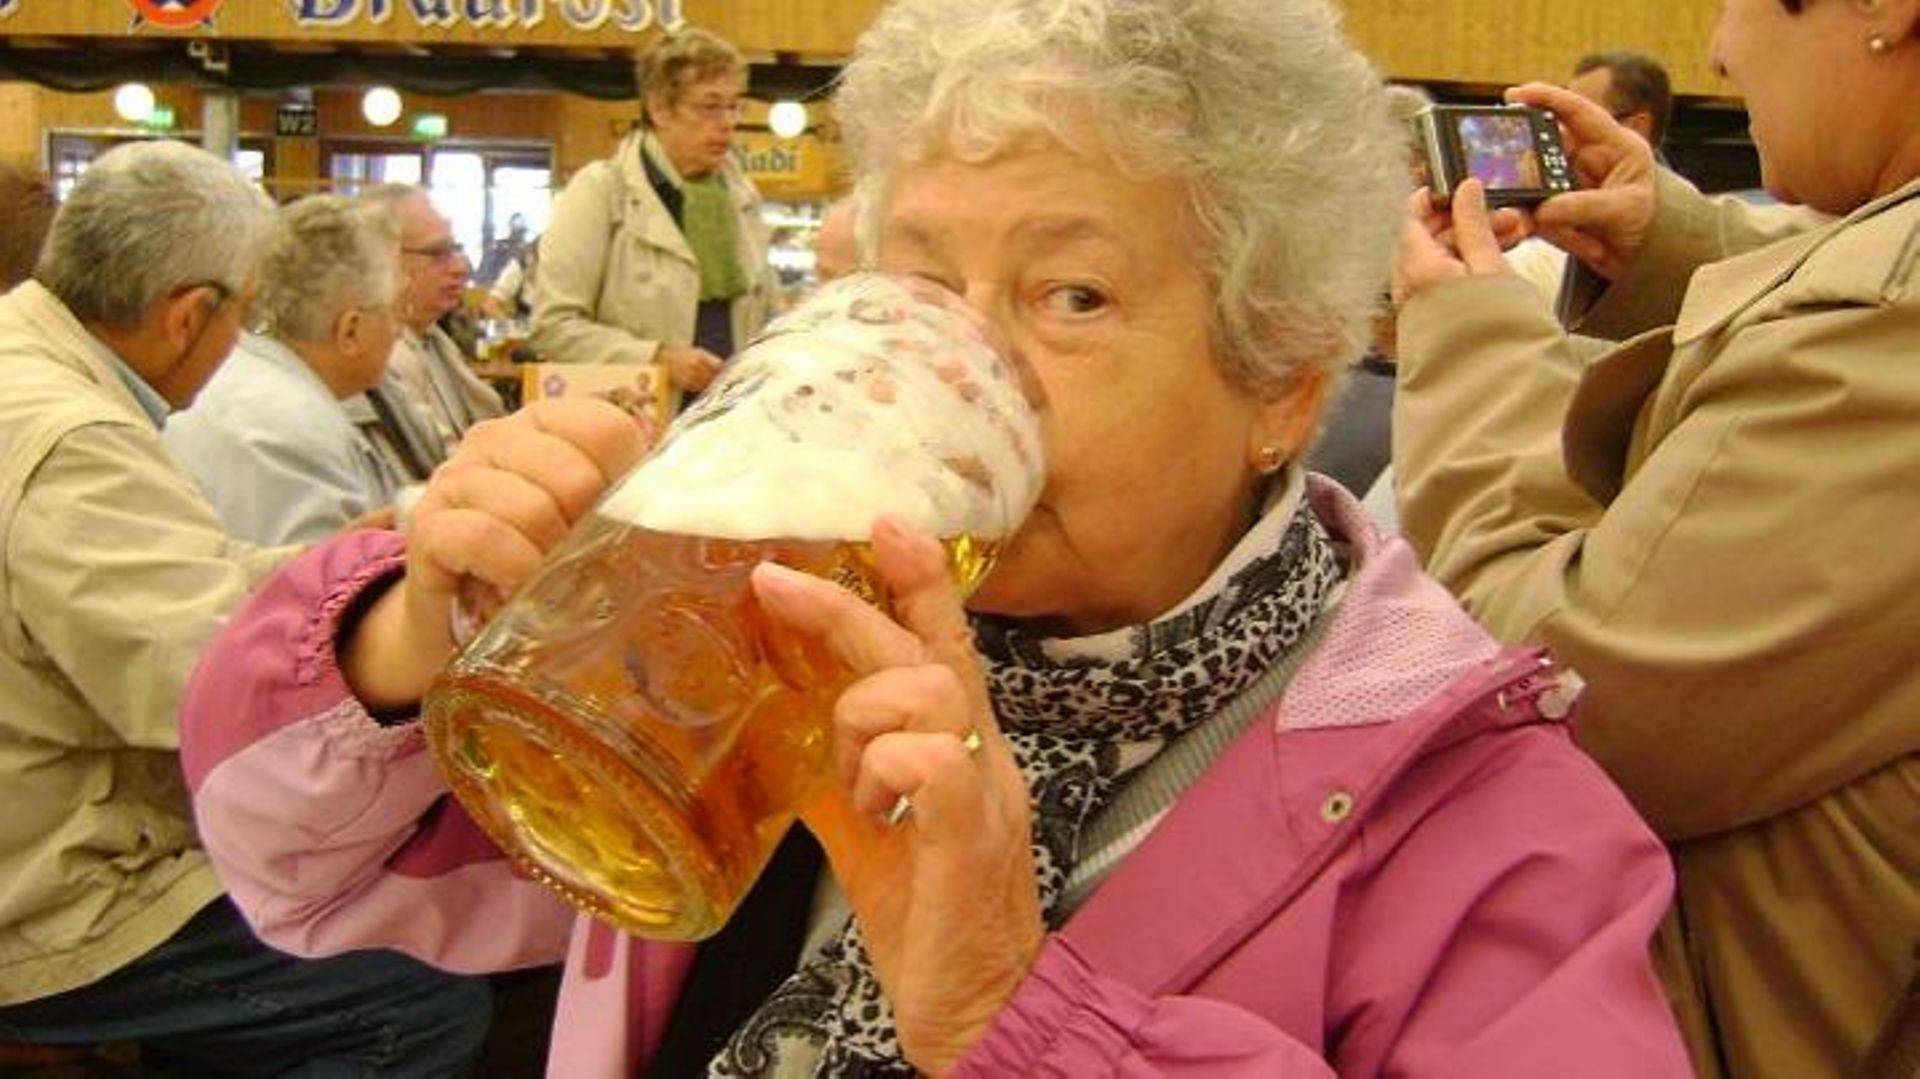 Boire de la bière pour être centenaire?